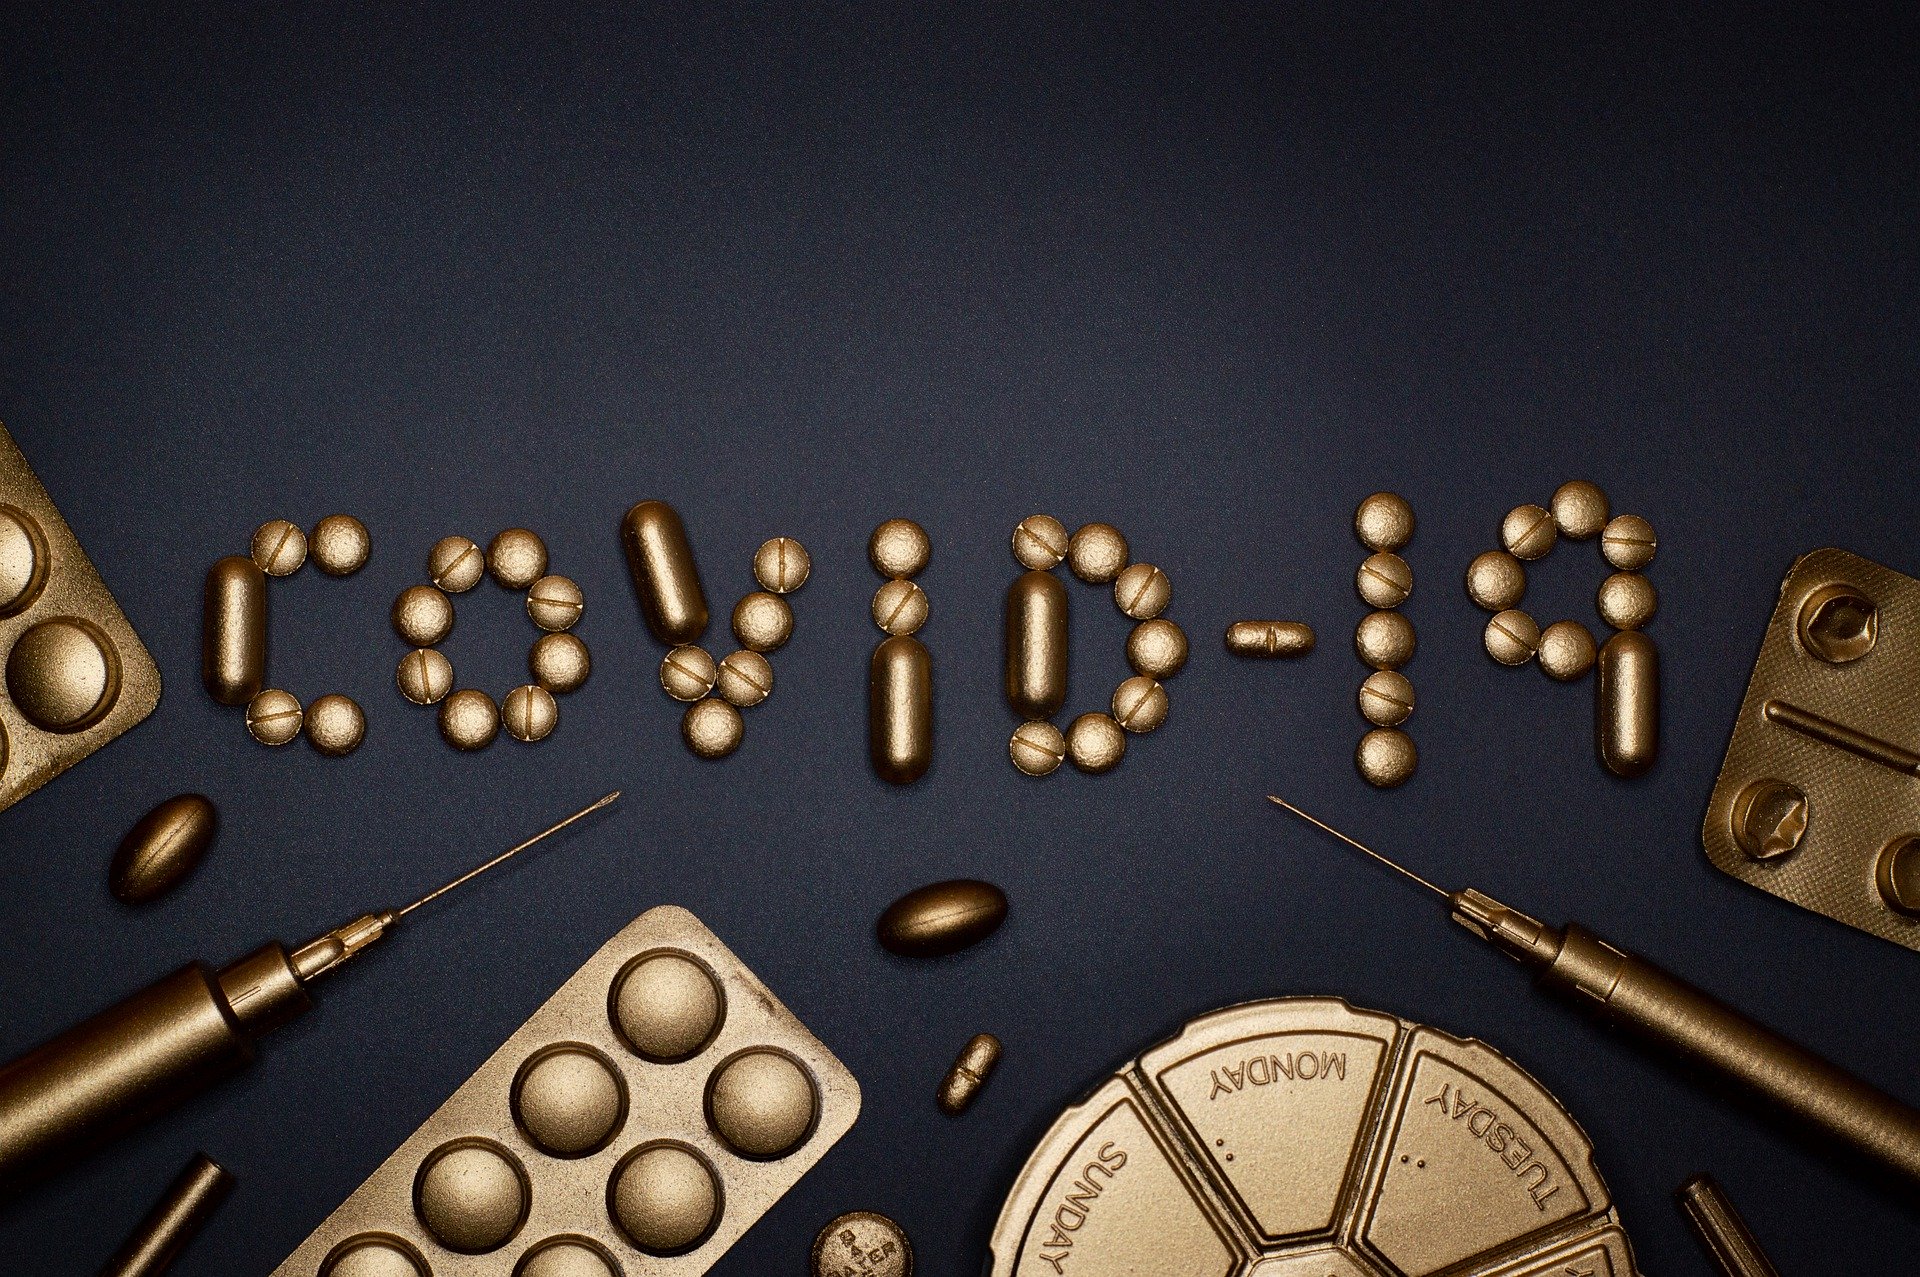 Vergoldete Tabletten und Blister, die COVID-19 ergeben